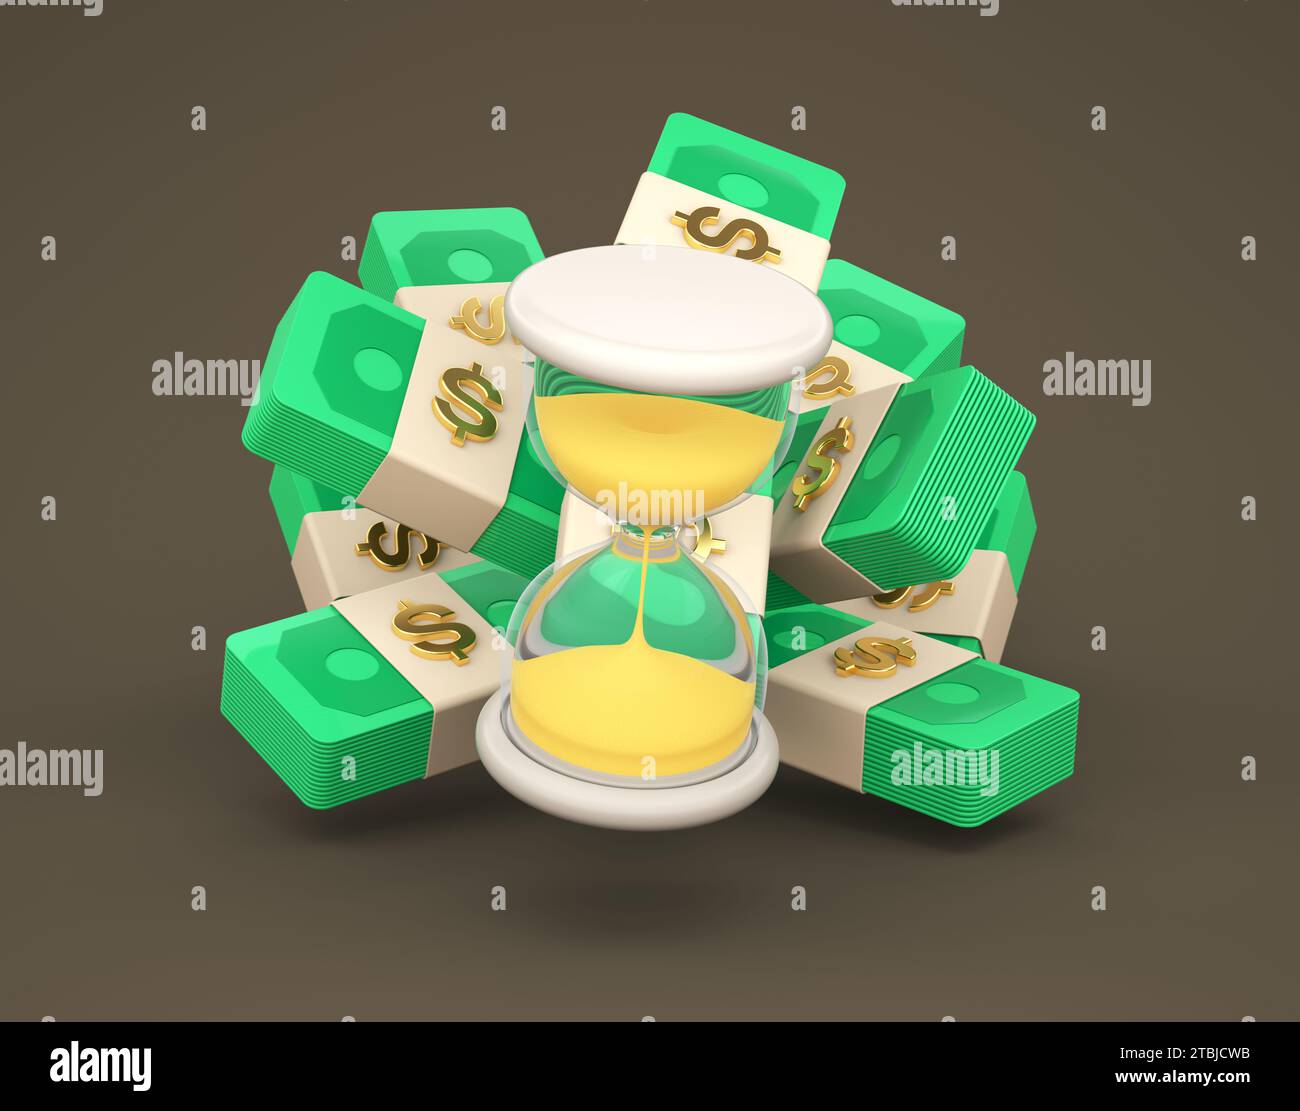 Illustration von Sanduhr mit Dollars stapelt herum auf Brown Studio Hintergrund. Einfaches Symbol für Web und App. Modernes, trendiges Design. Cartoon Stockfoto